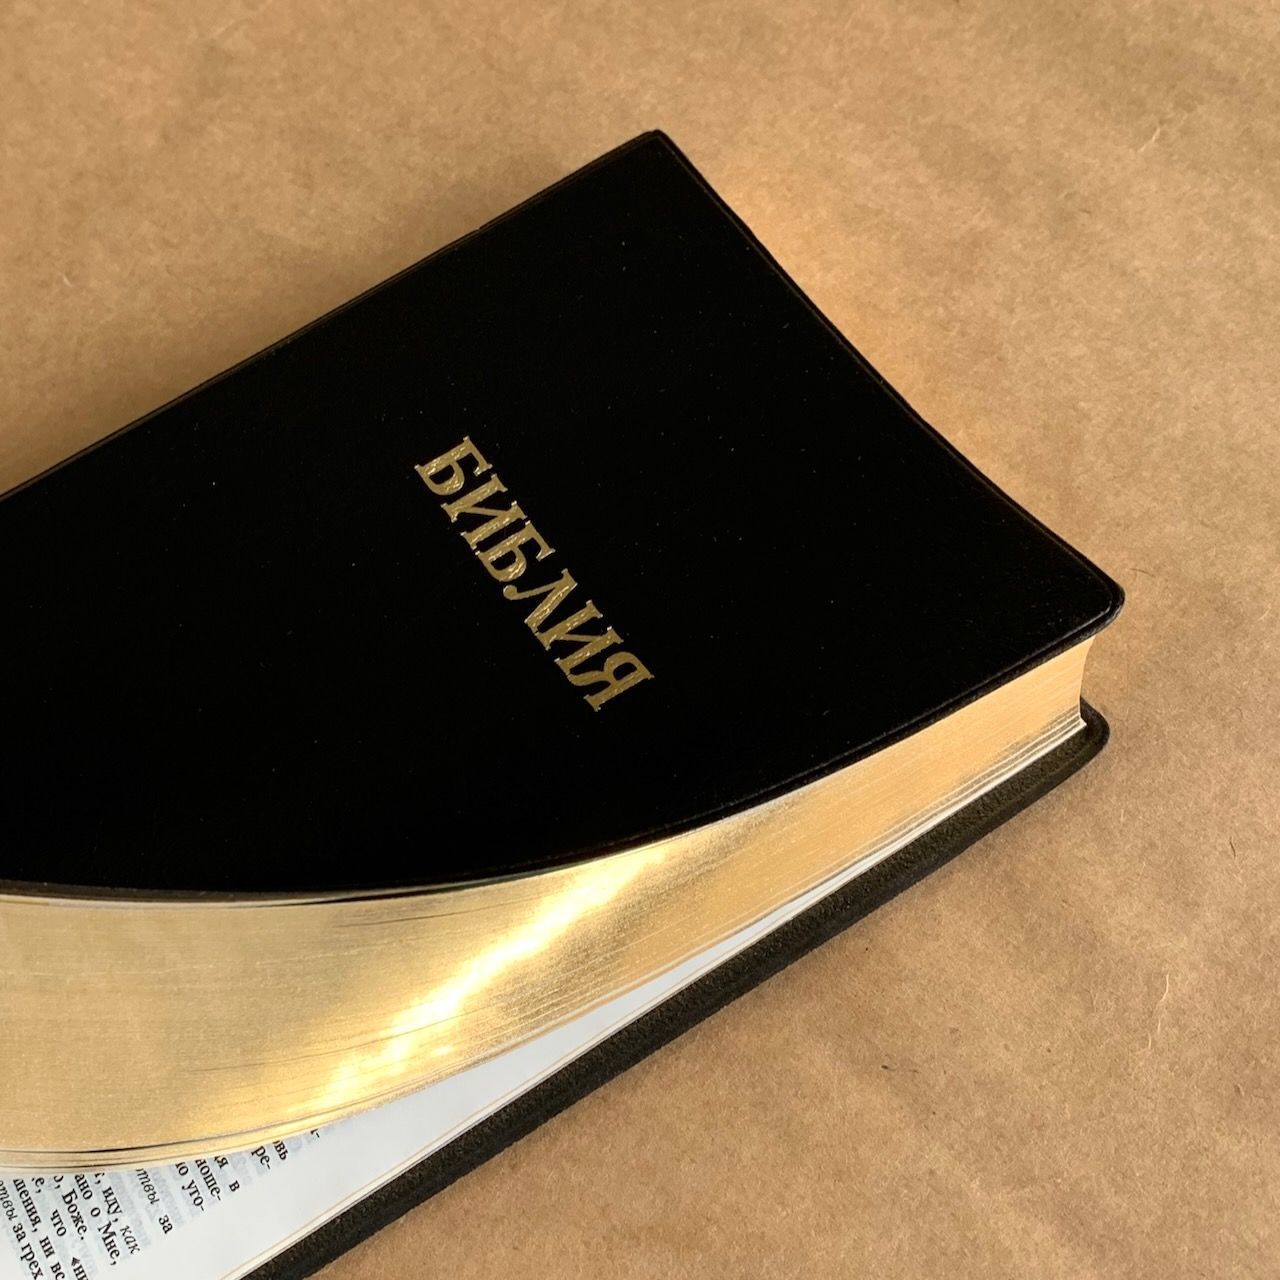 Библия 048 код E3 надпись "библия", переплет искусственной кожи, цвет черный металлик, формат 125*190 мм, золотой обрез, синодальный перевод, параллельные места по центру страницы, 2 закладки, шрифт 10-11 кегель, цветные карты